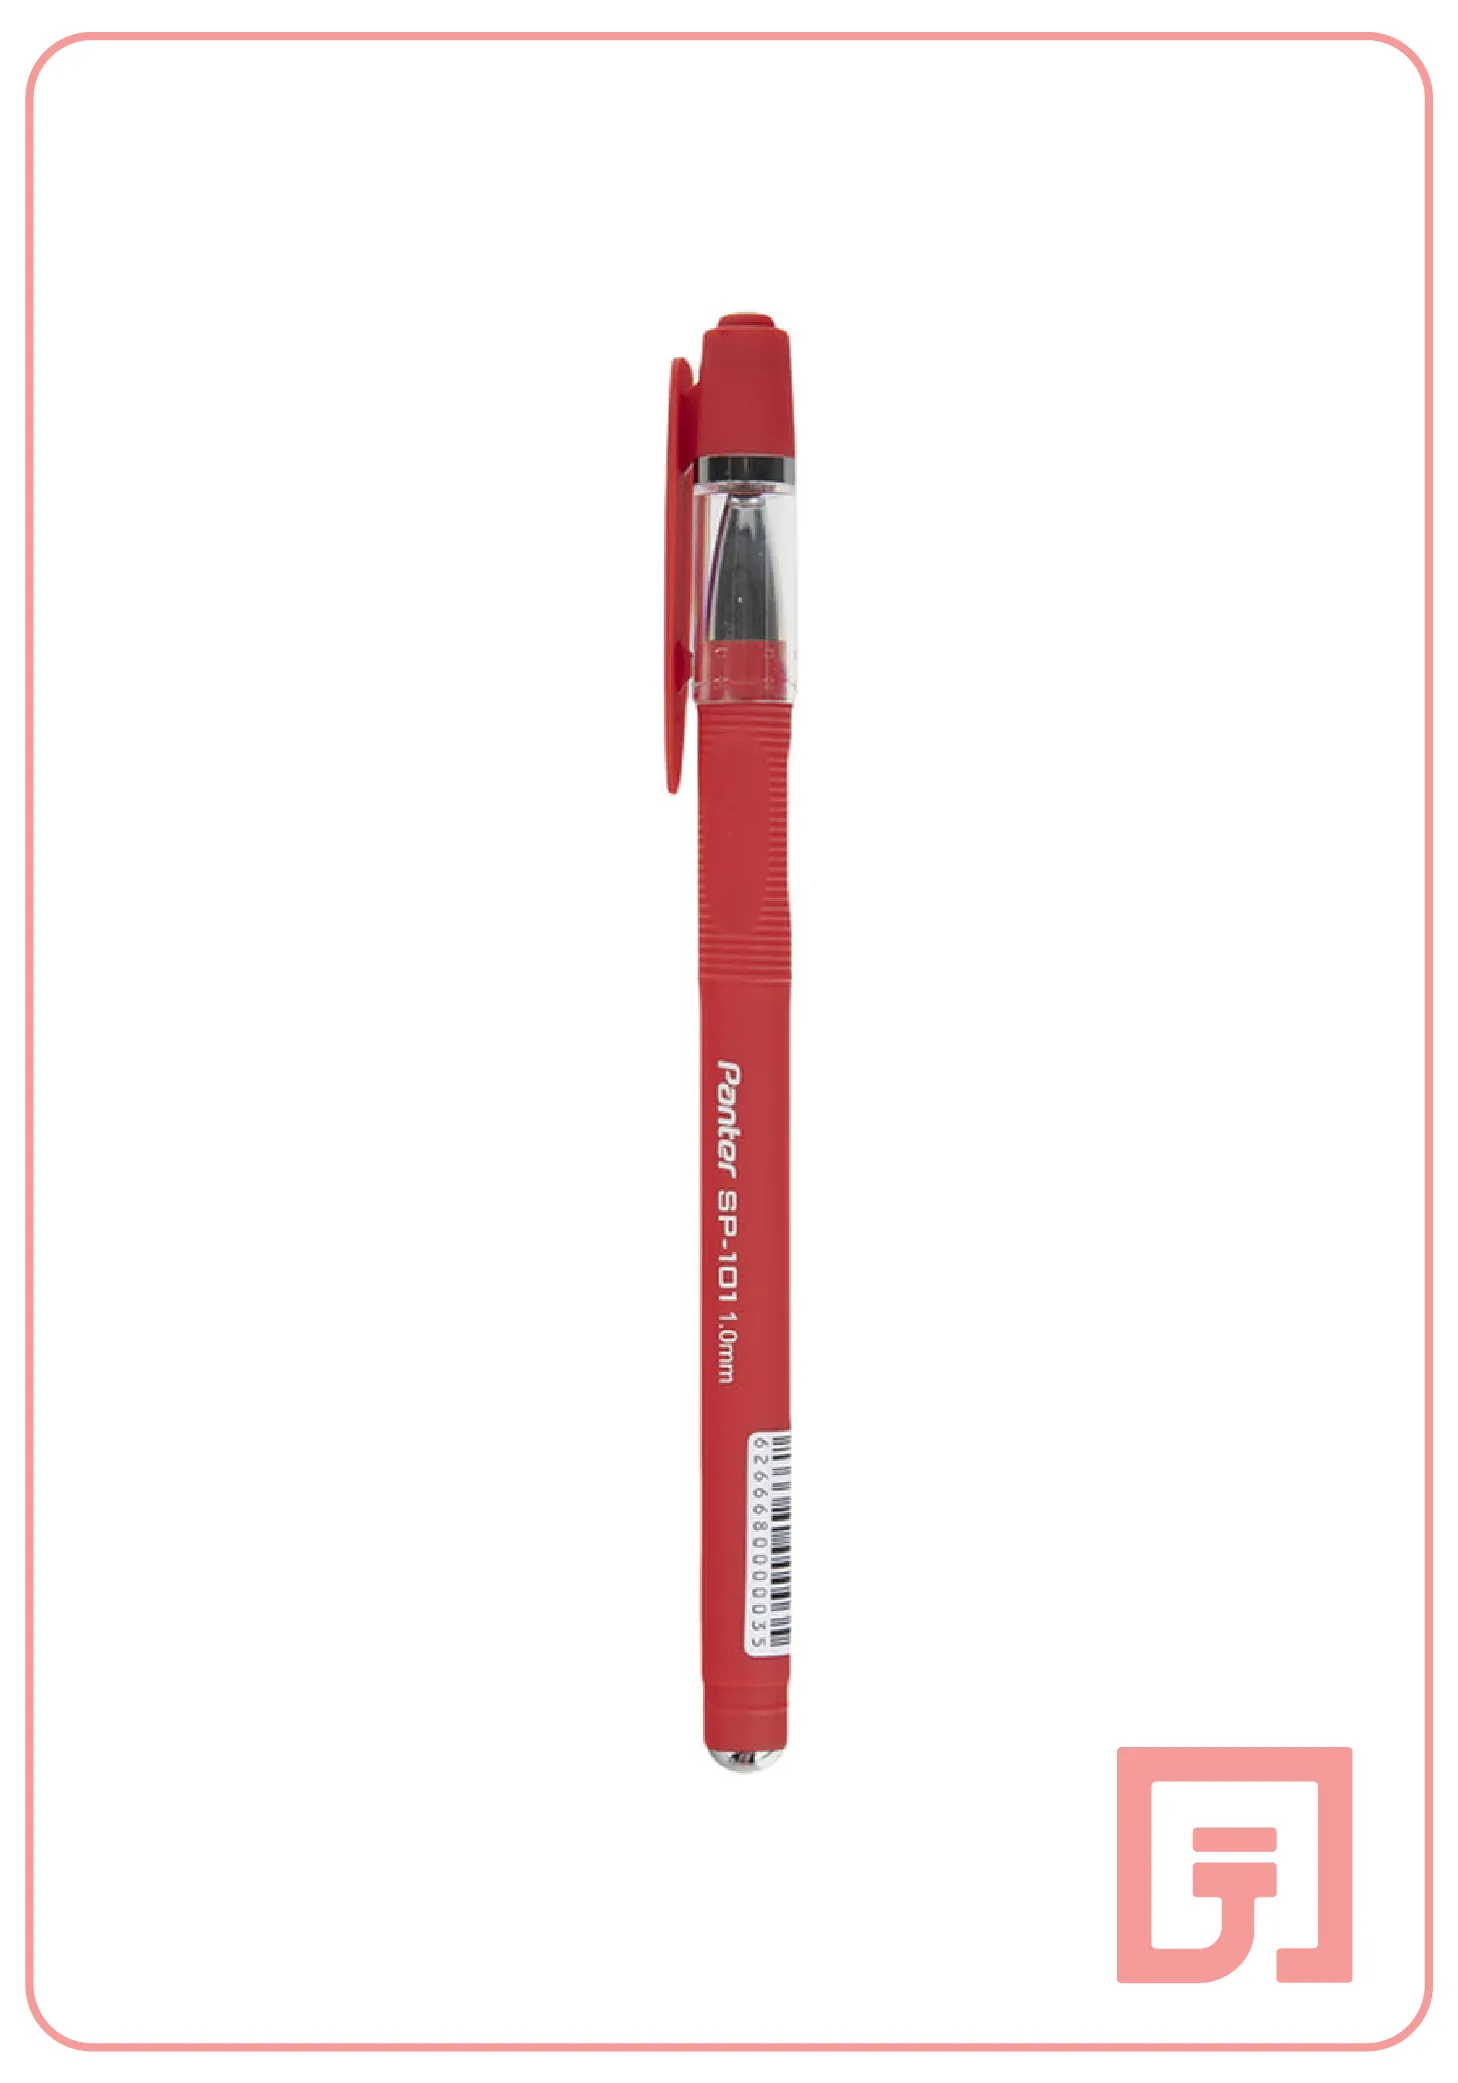 خودکار قرمز پنتر قطر نوشتاری 1 میلی متر